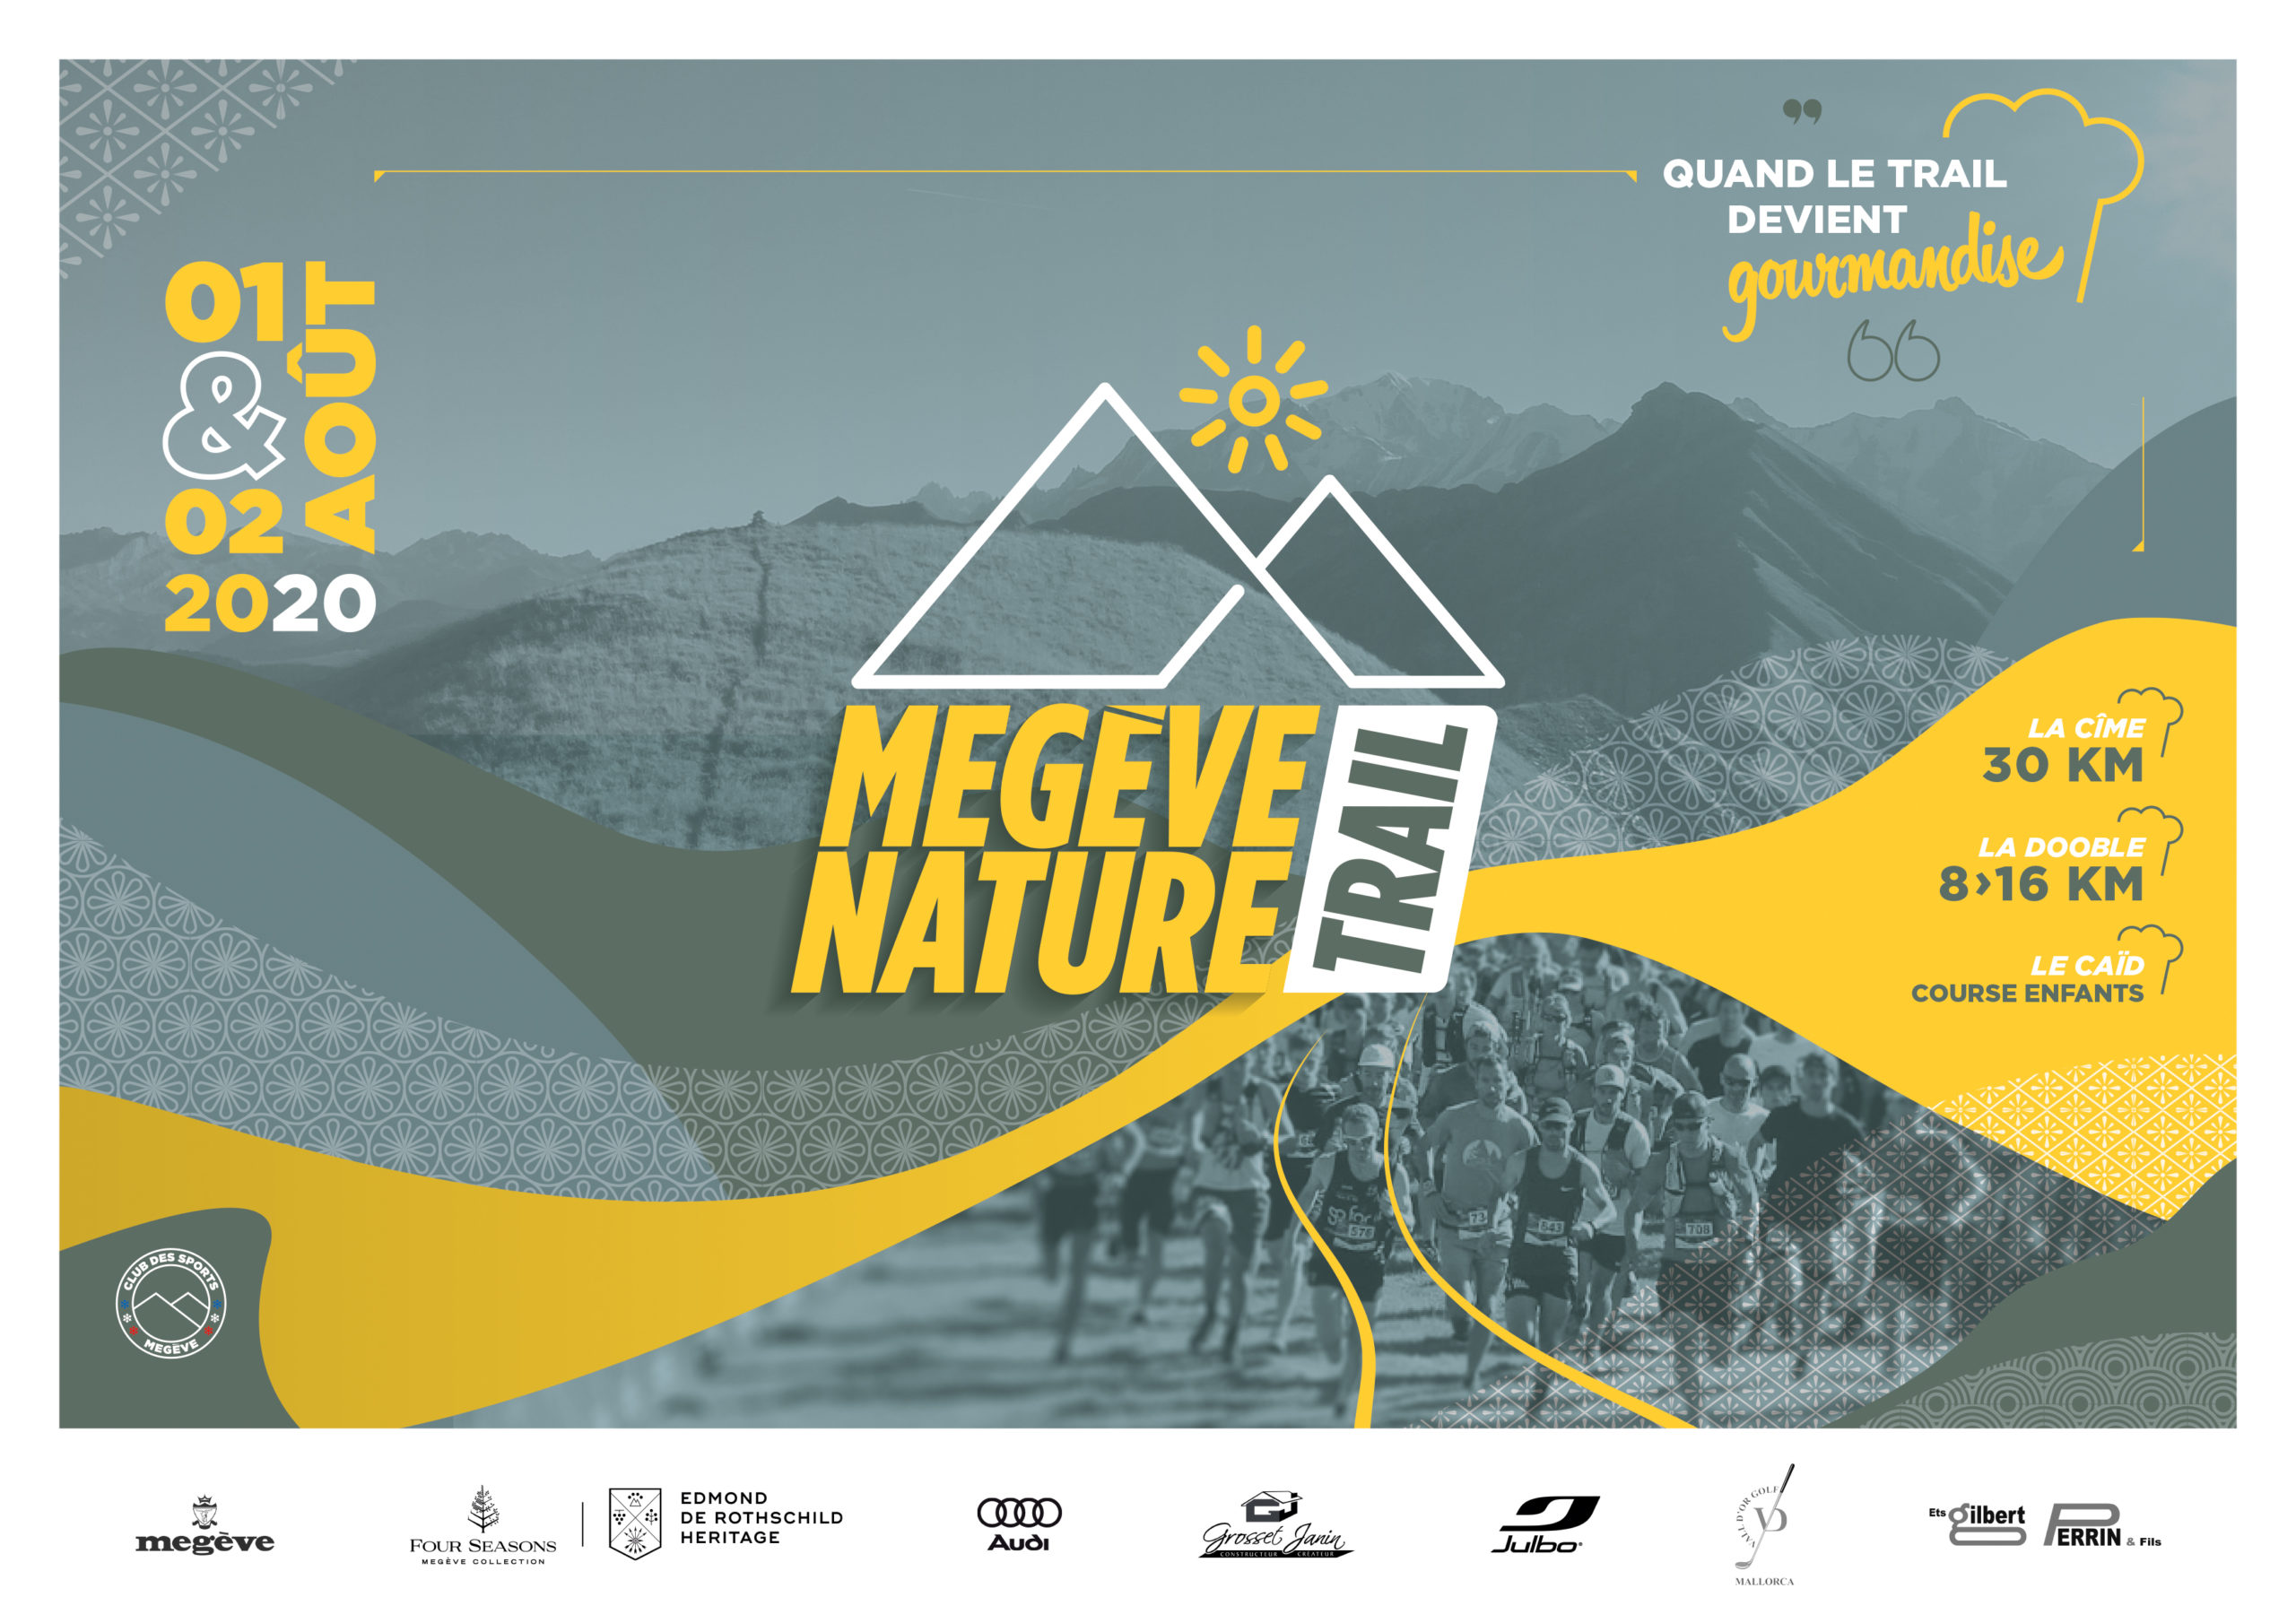 Megève Nature Trail – Informations course